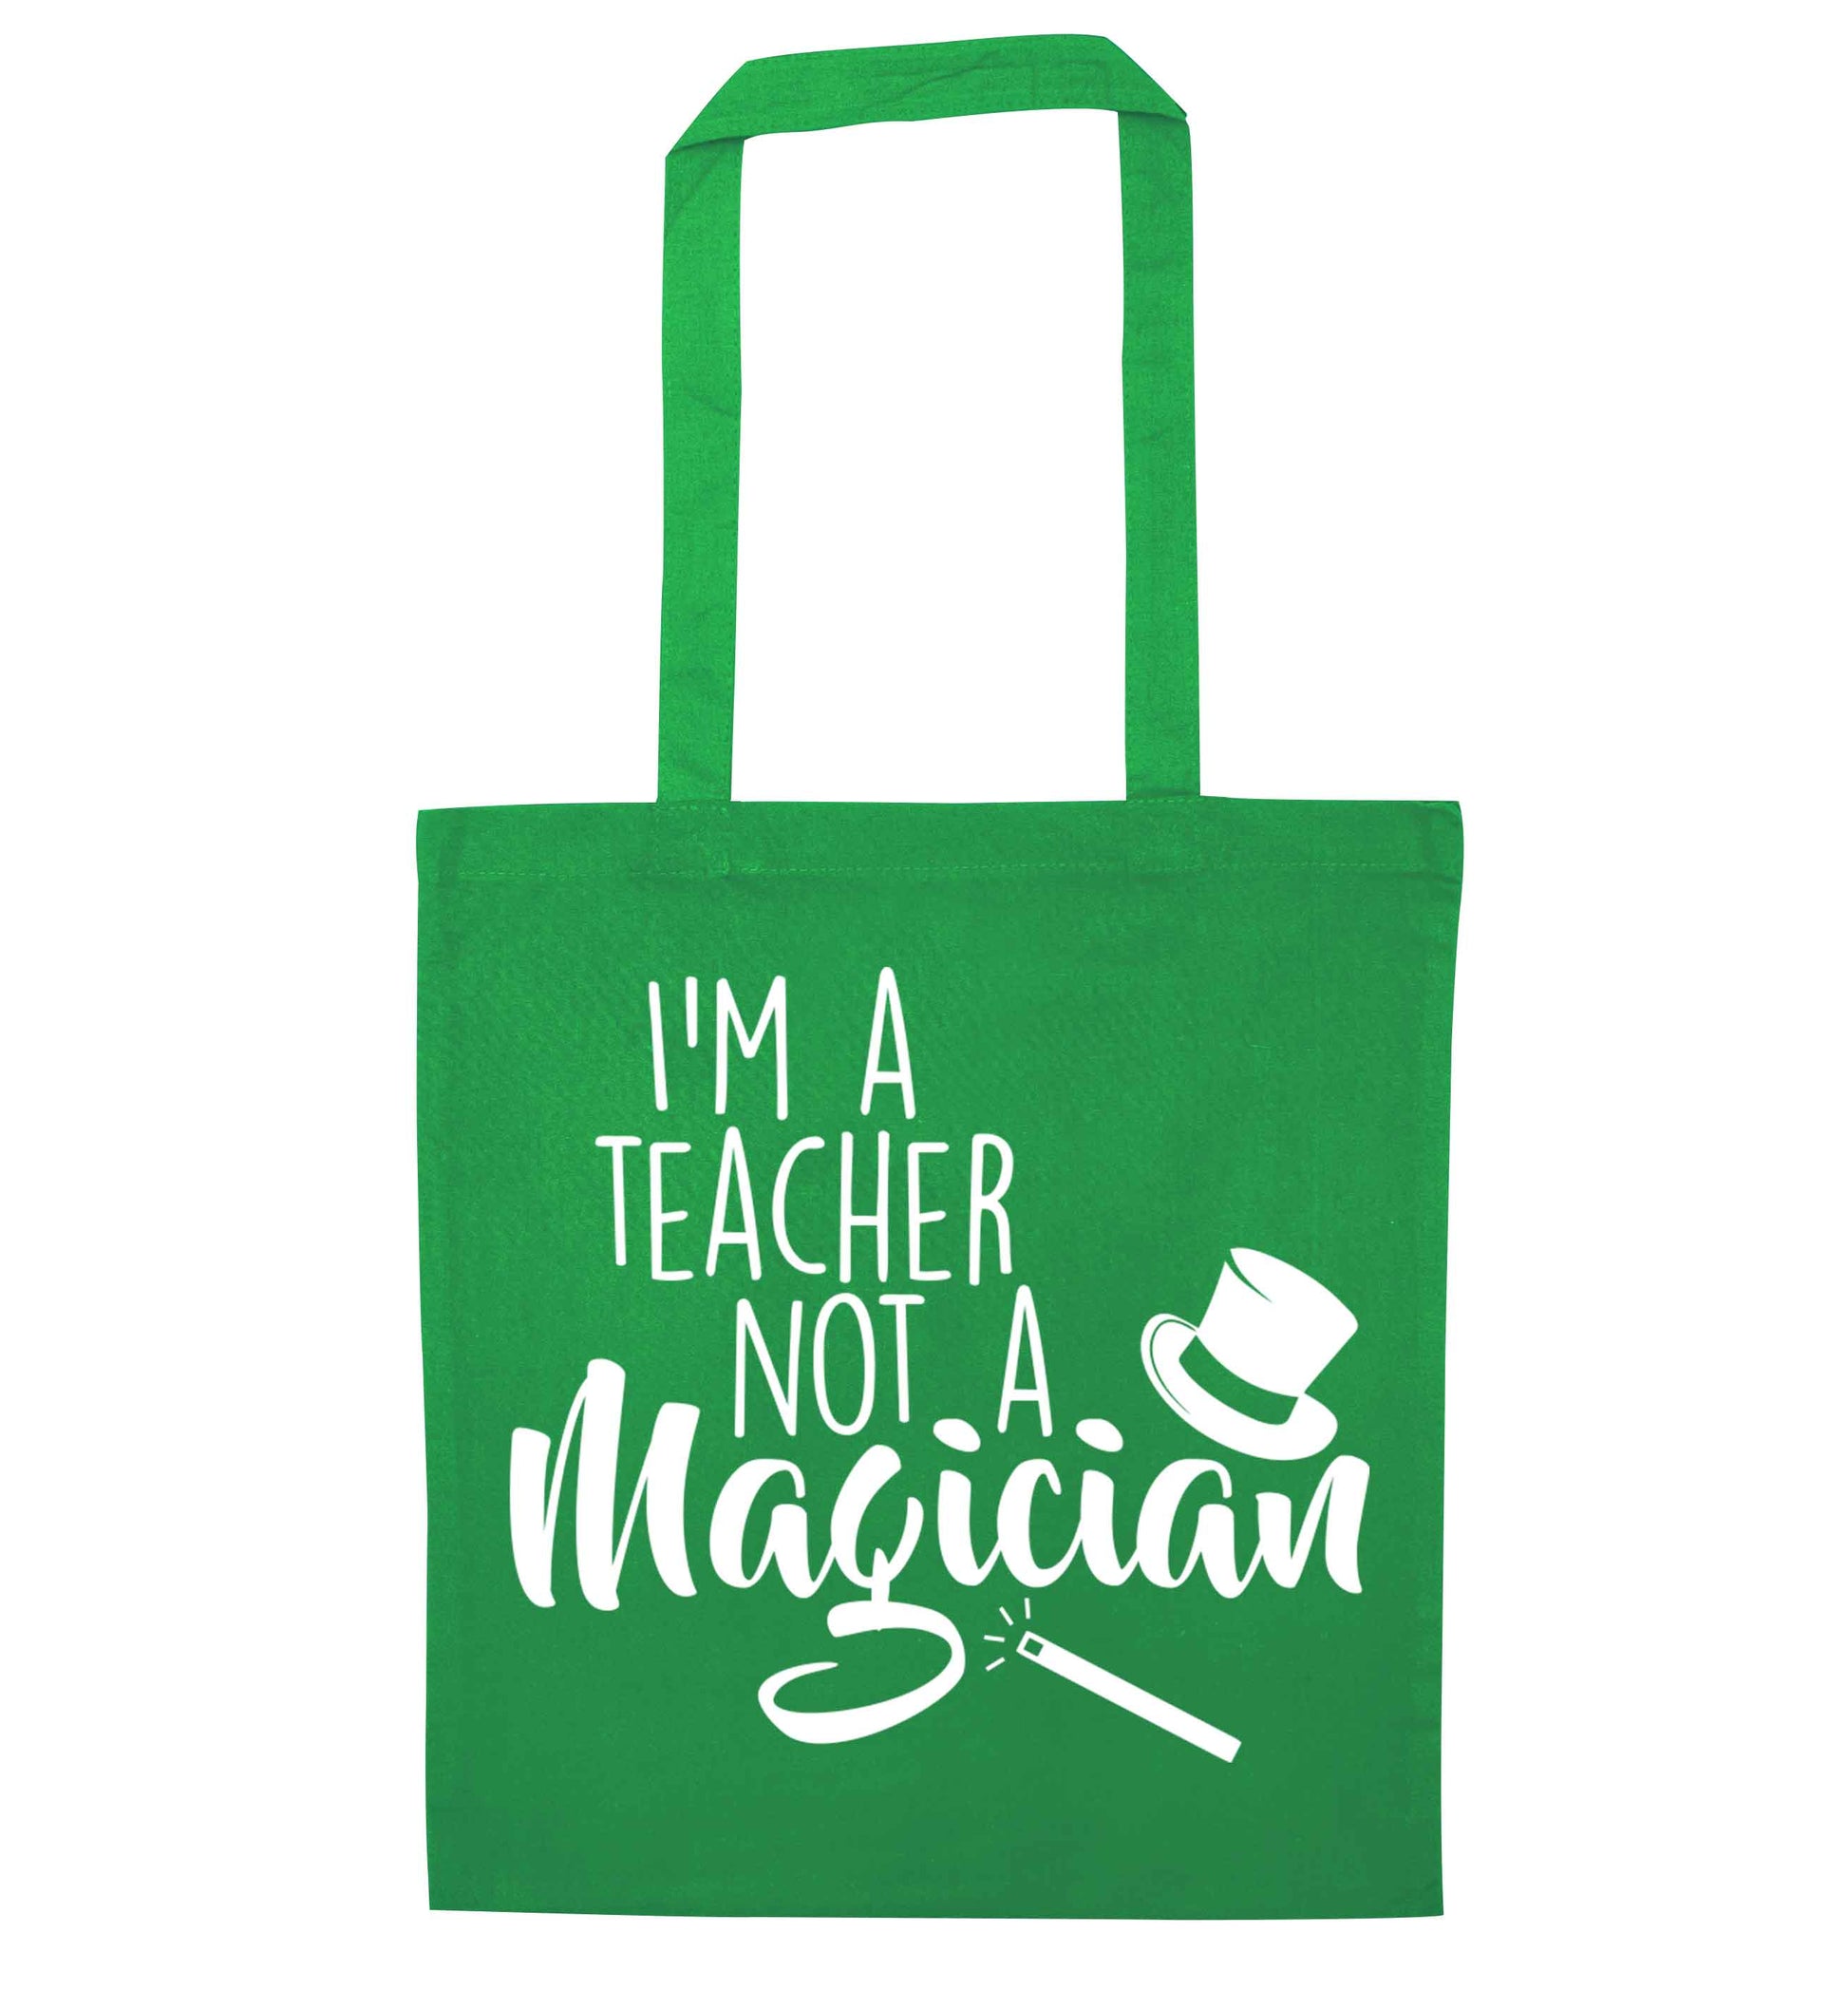 I'm a teacher not a magician green tote bag